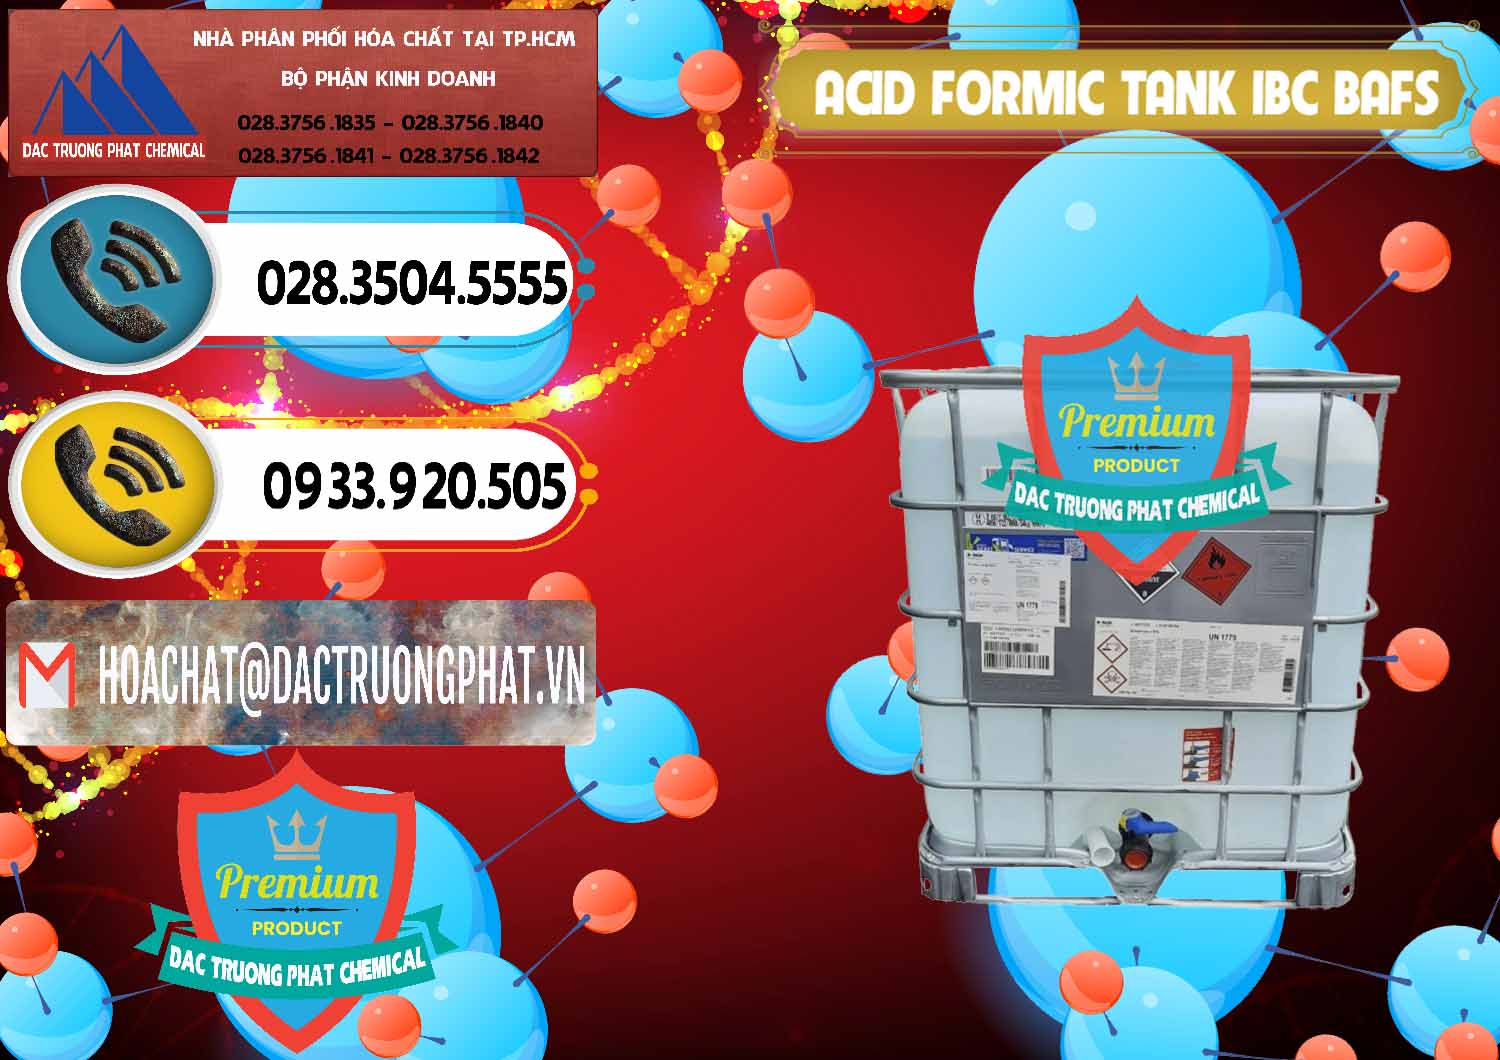 Cty chuyên cung cấp _ bán Acid Formic - Axit Formic Tank - Bồn IBC BASF Đức - 0366 - Đơn vị kinh doanh và cung cấp hóa chất tại TP.HCM - hoachatdetnhuom.vn